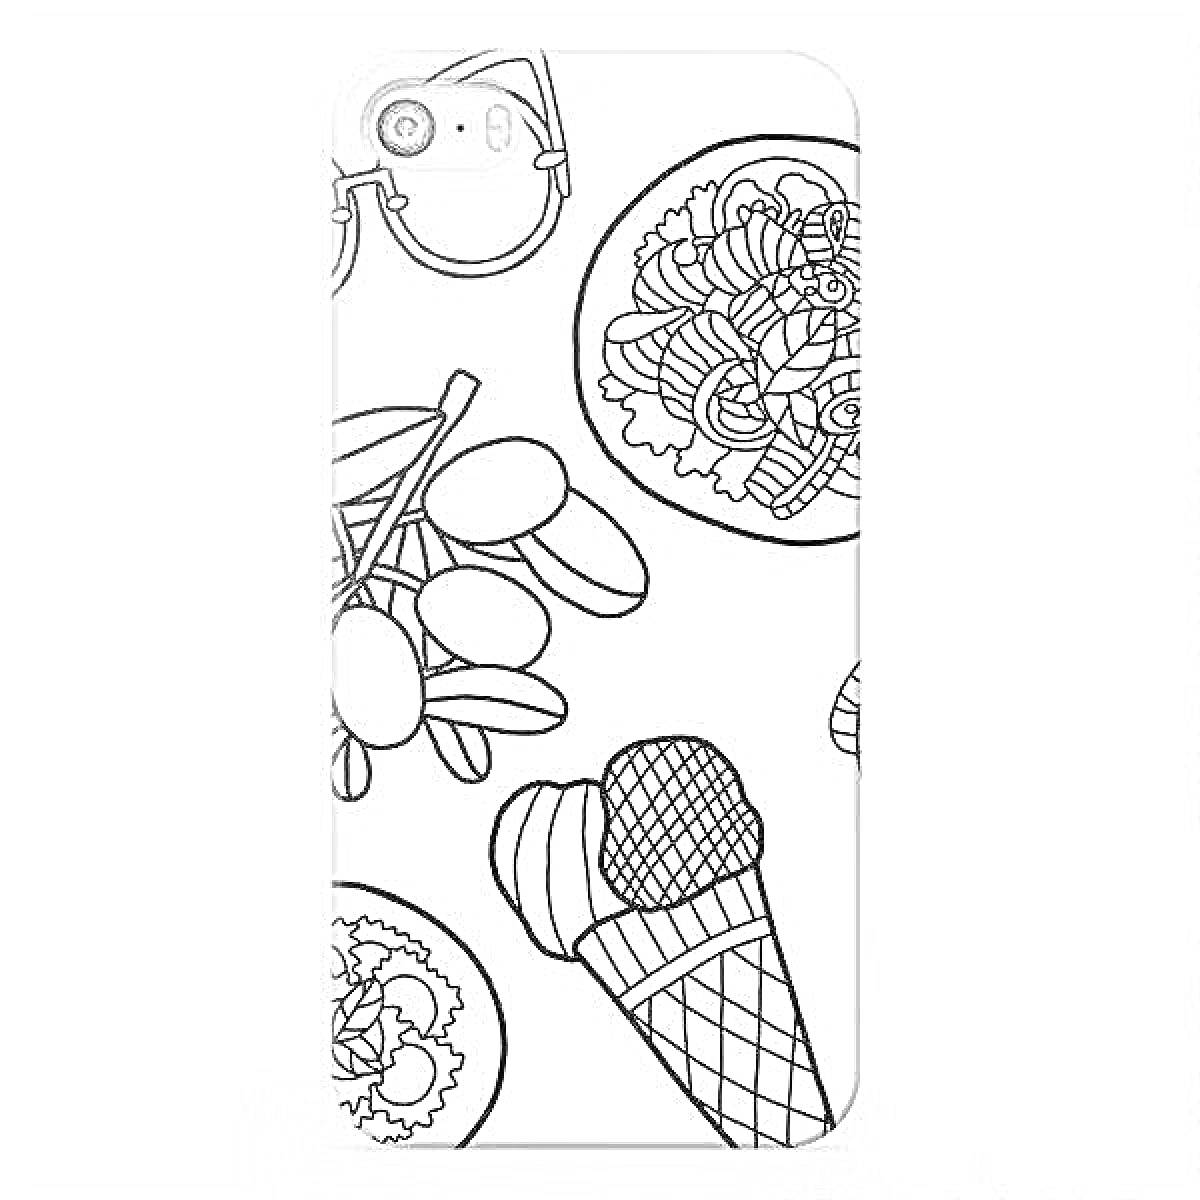 Раскраска Чехол для телефона с мороженым, оливками, макаронами и салатом